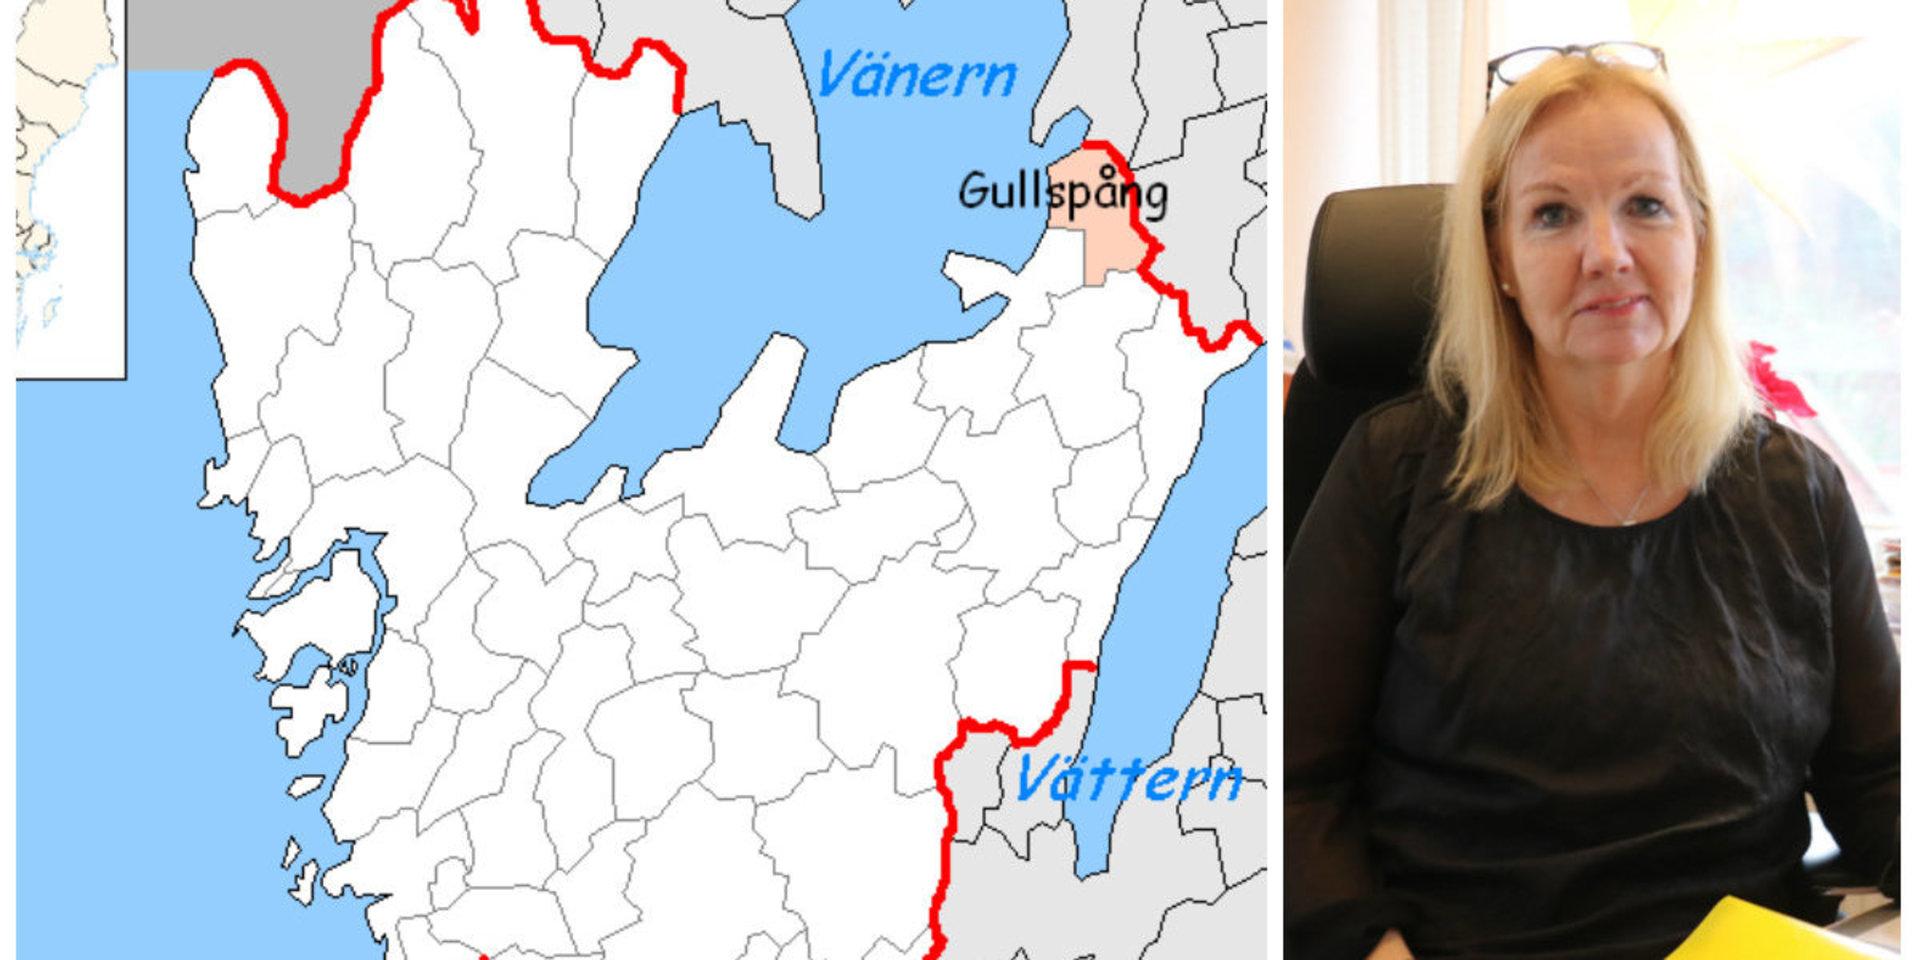 Orust kommun vill dela antalet nyanlända med Gullspångs kommun, vilket gör att Orust får 13 nyanlända jämfört med 24 som tilldelningen är. En bra fördelning menar kommunalrådet Catharina Bråkenhielm (S).